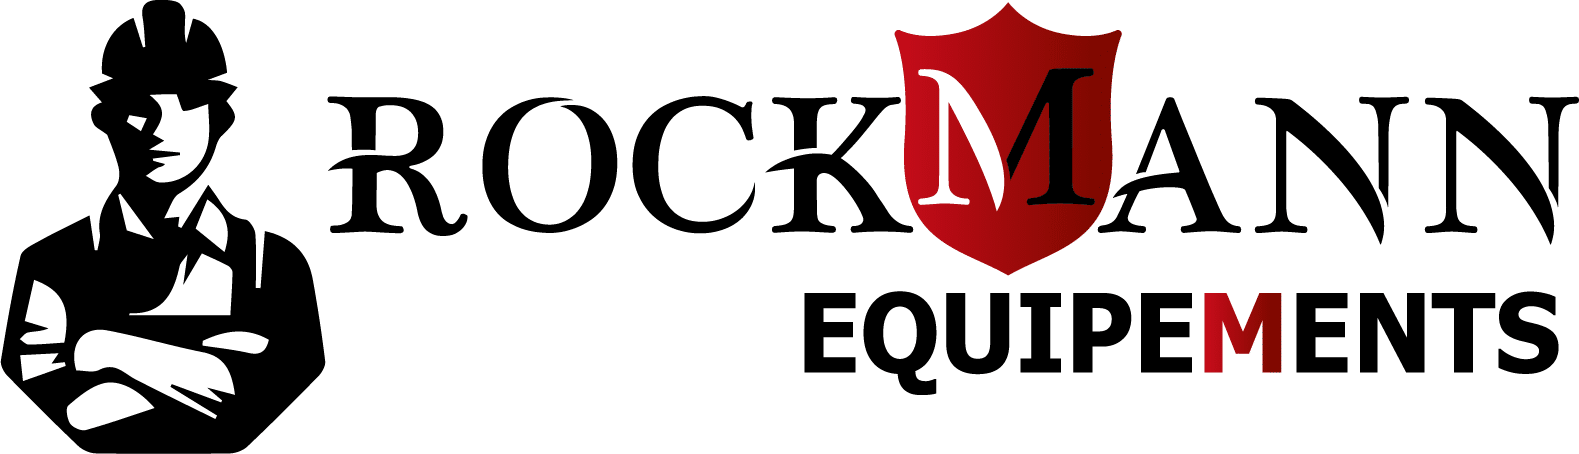 Rockmann équipements